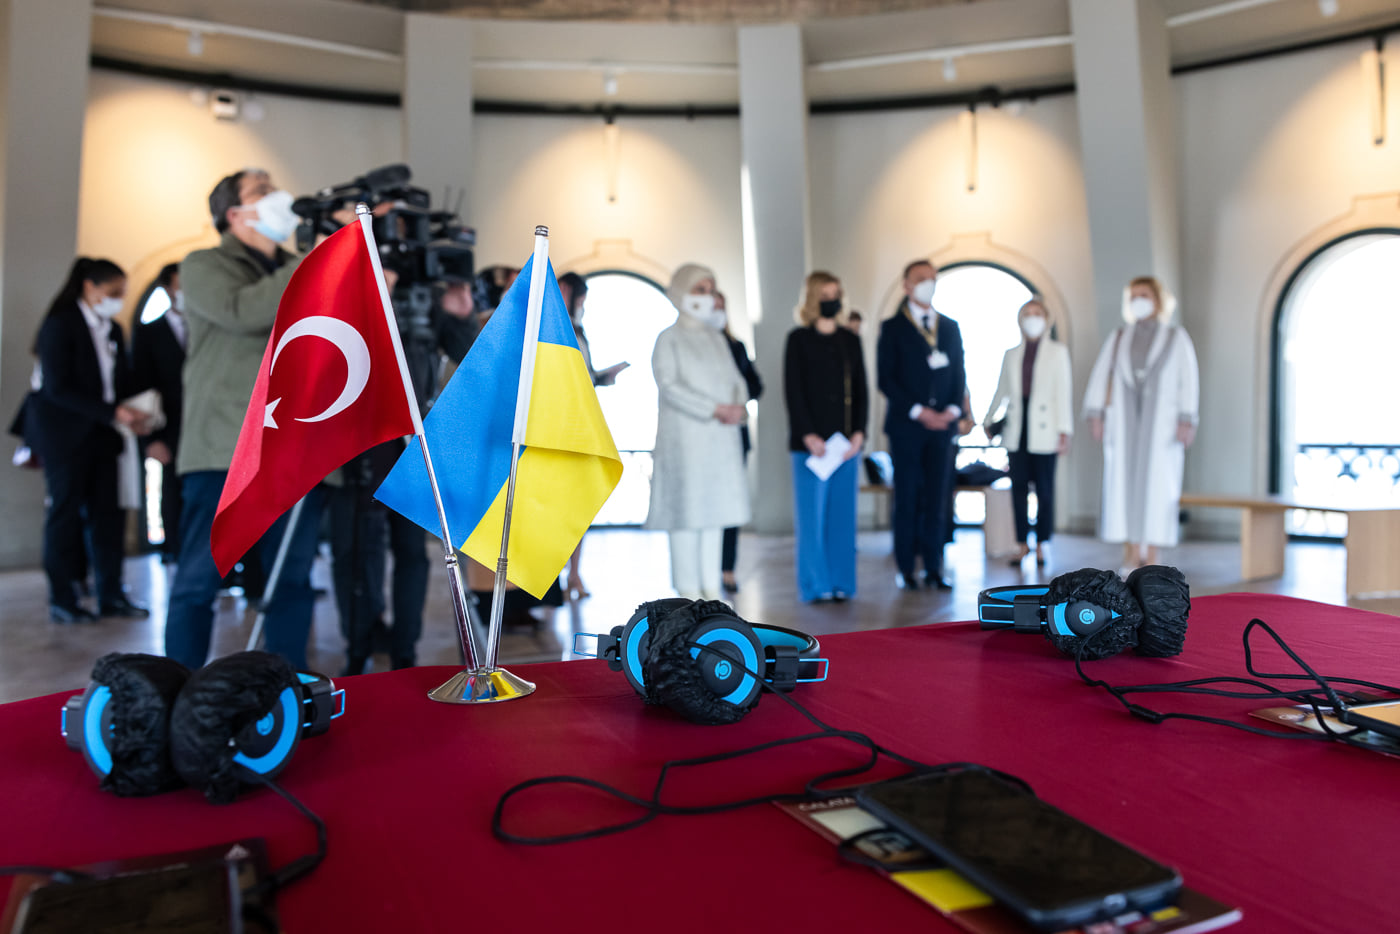 Церемония открытия аудиогидов в музеях Турции с участием Елены Зеленской. Скриншот из фейсбука Офиса президента